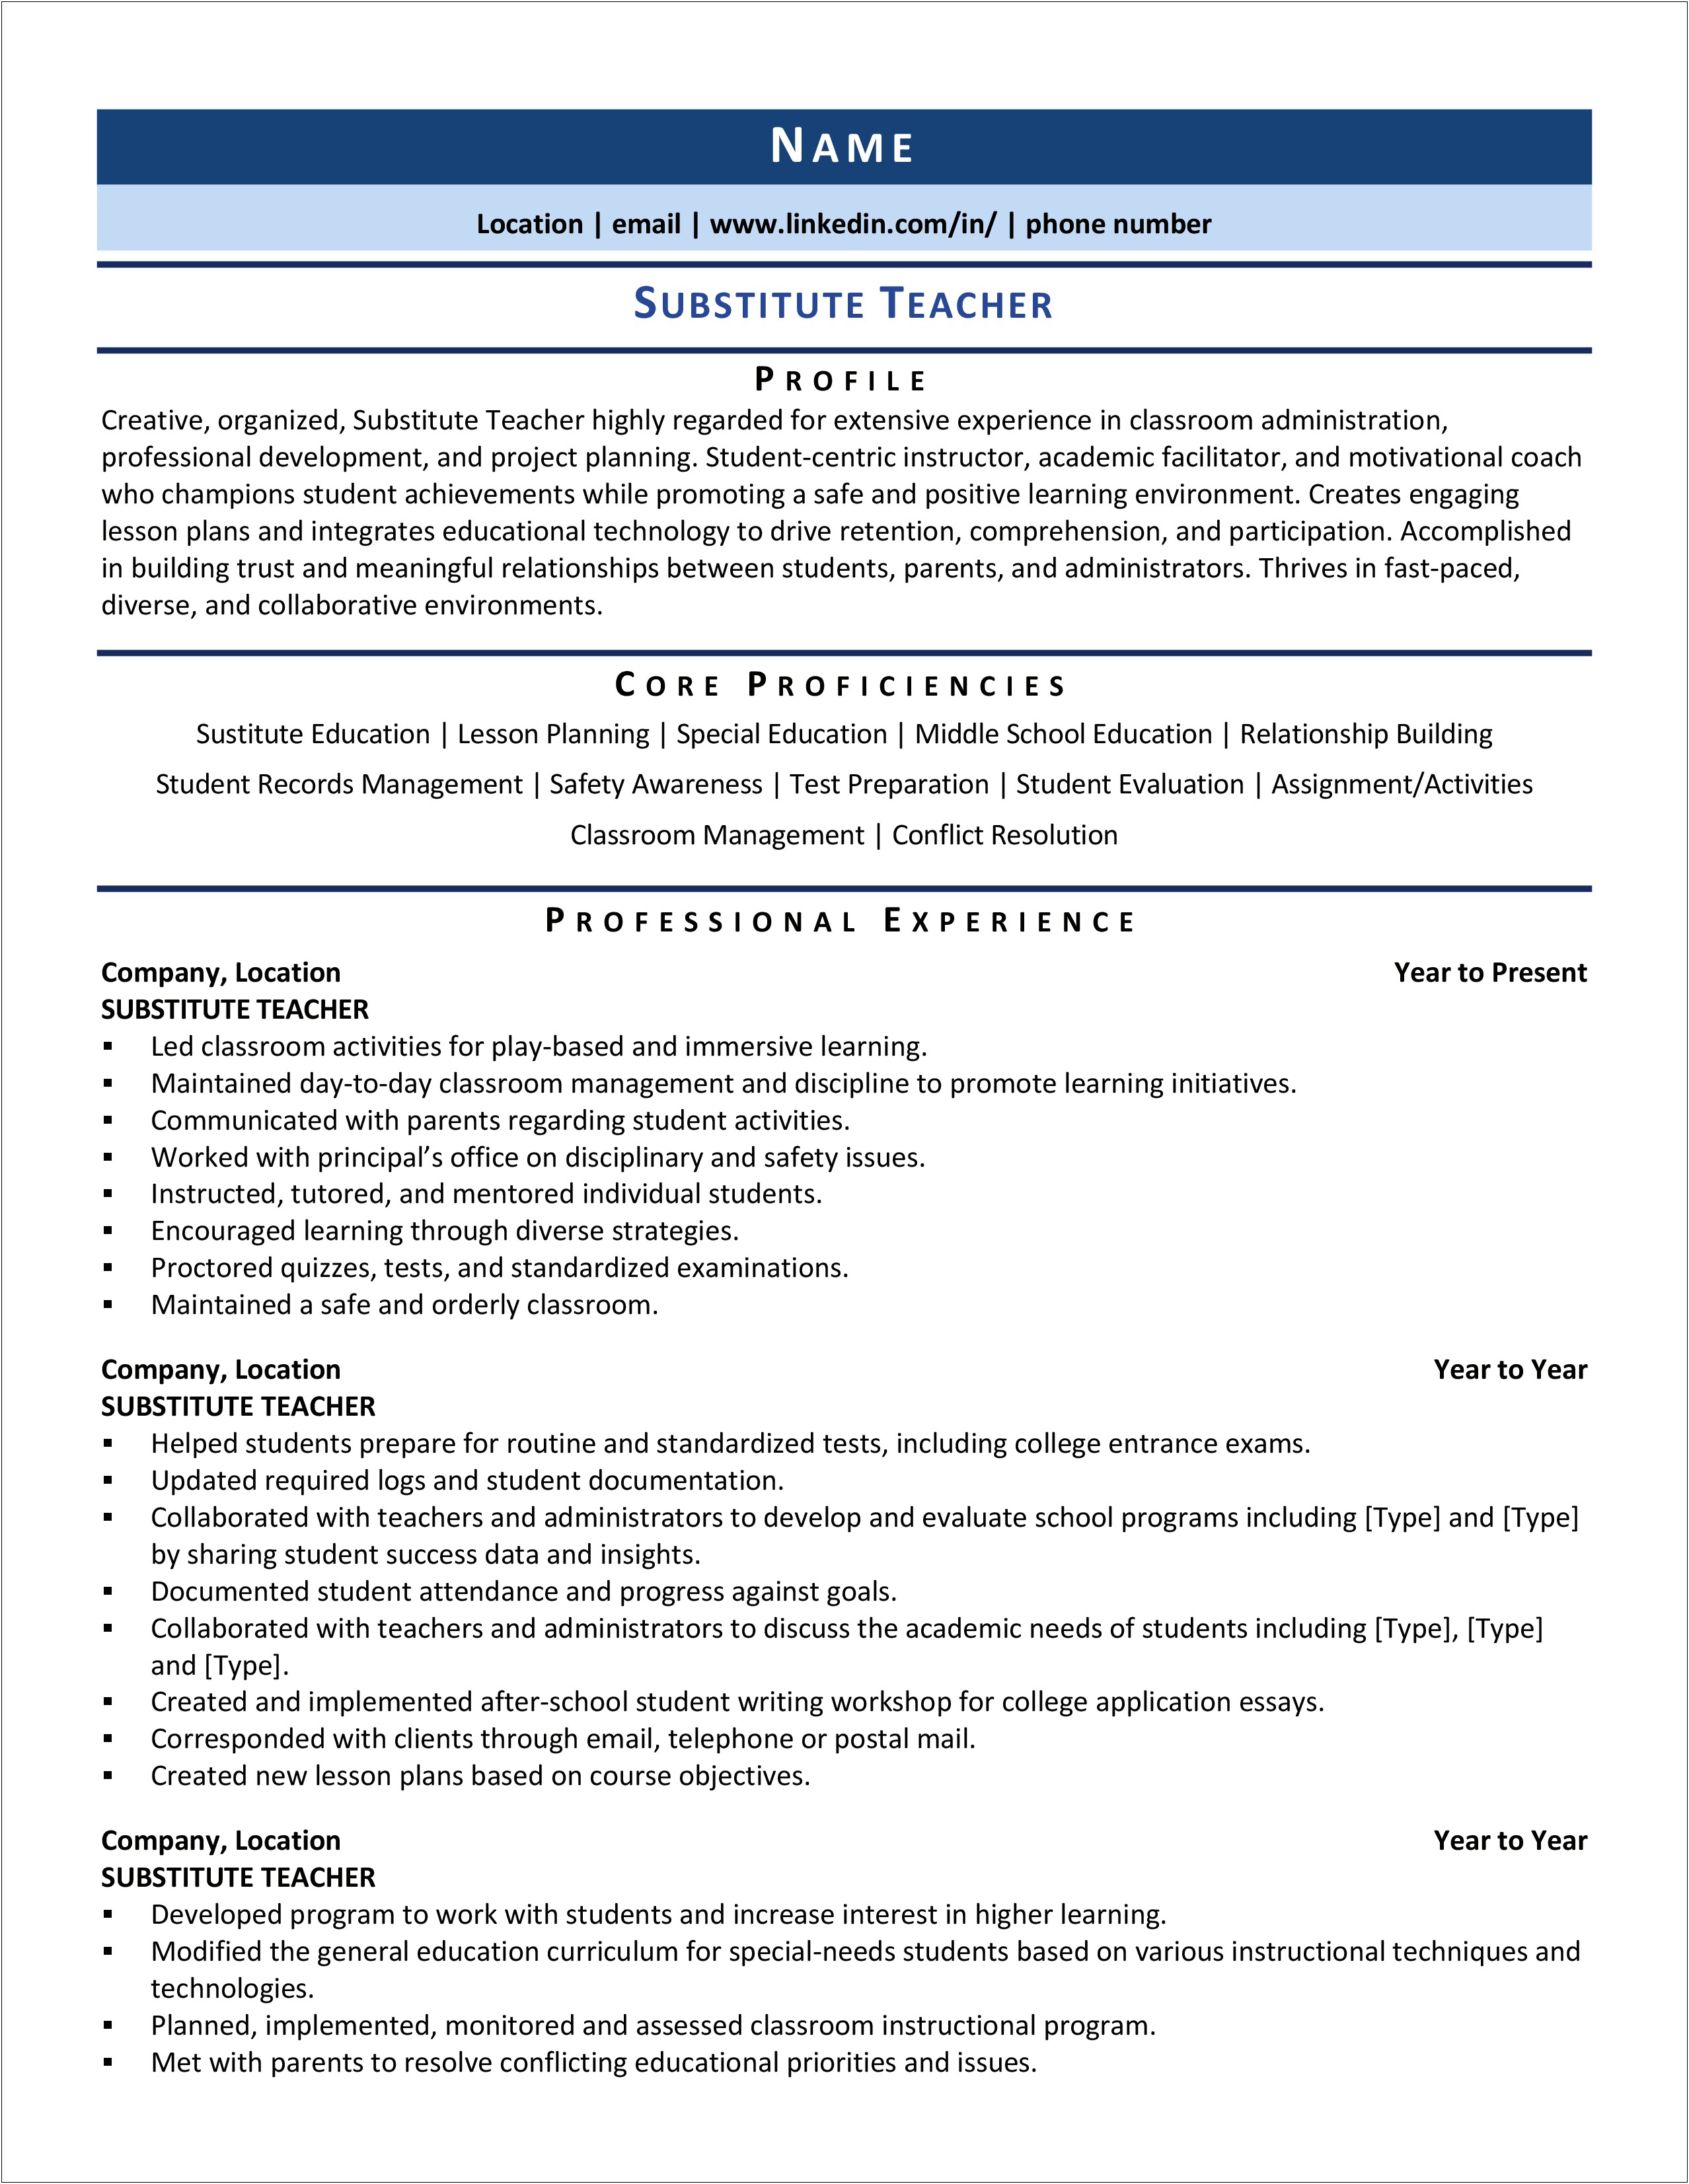 Resume Profile Samples For Teachers